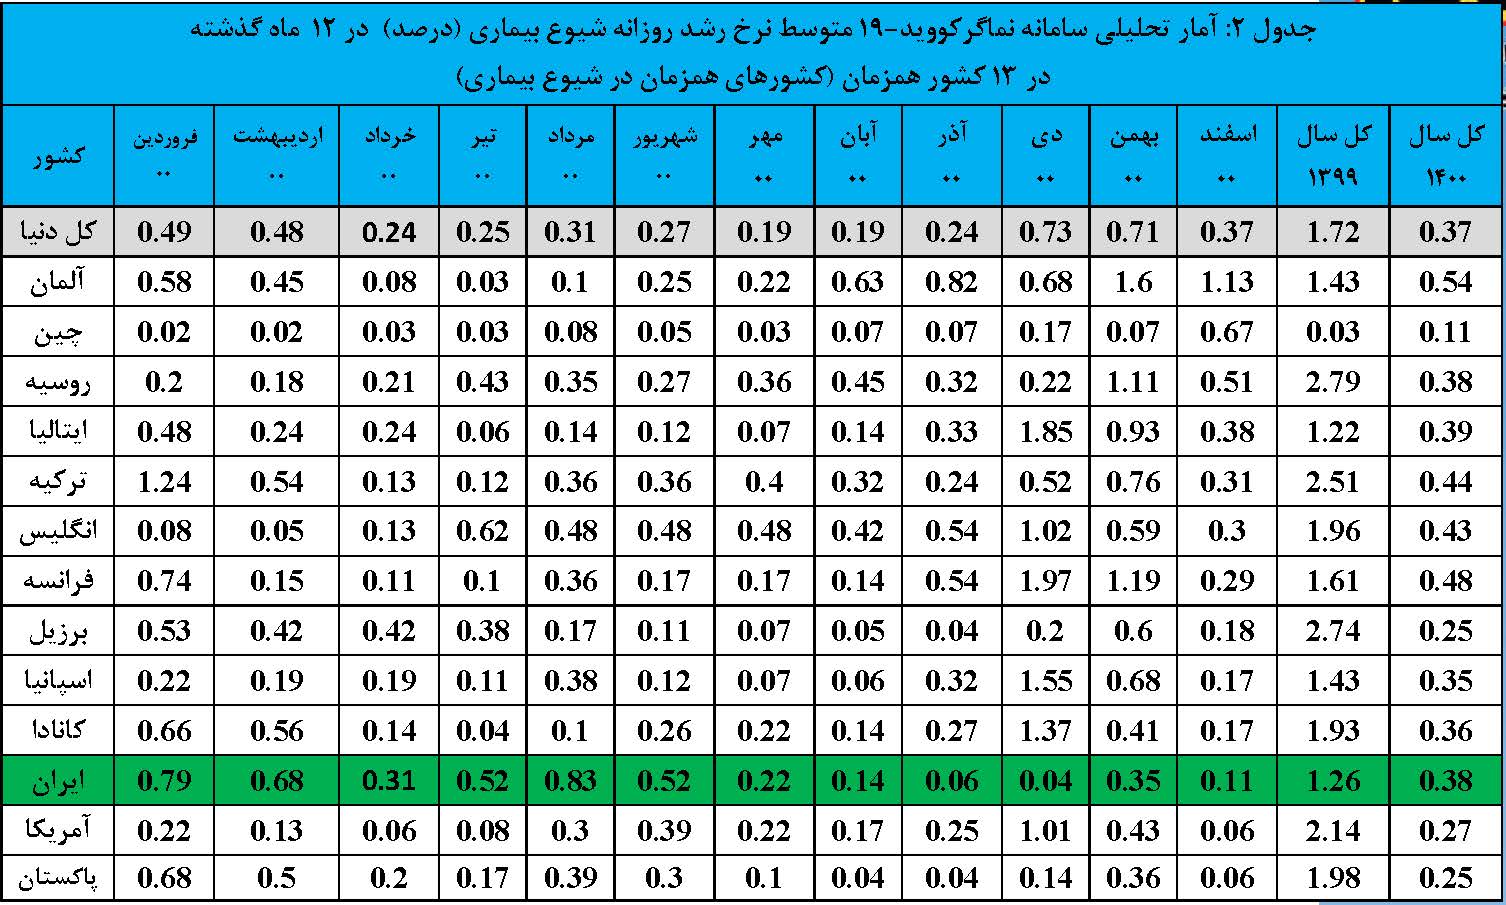 گزارش تحلیلی کامل سامانه نماگر کووید-19 ISC در دنیا و ایران-در سال 1400